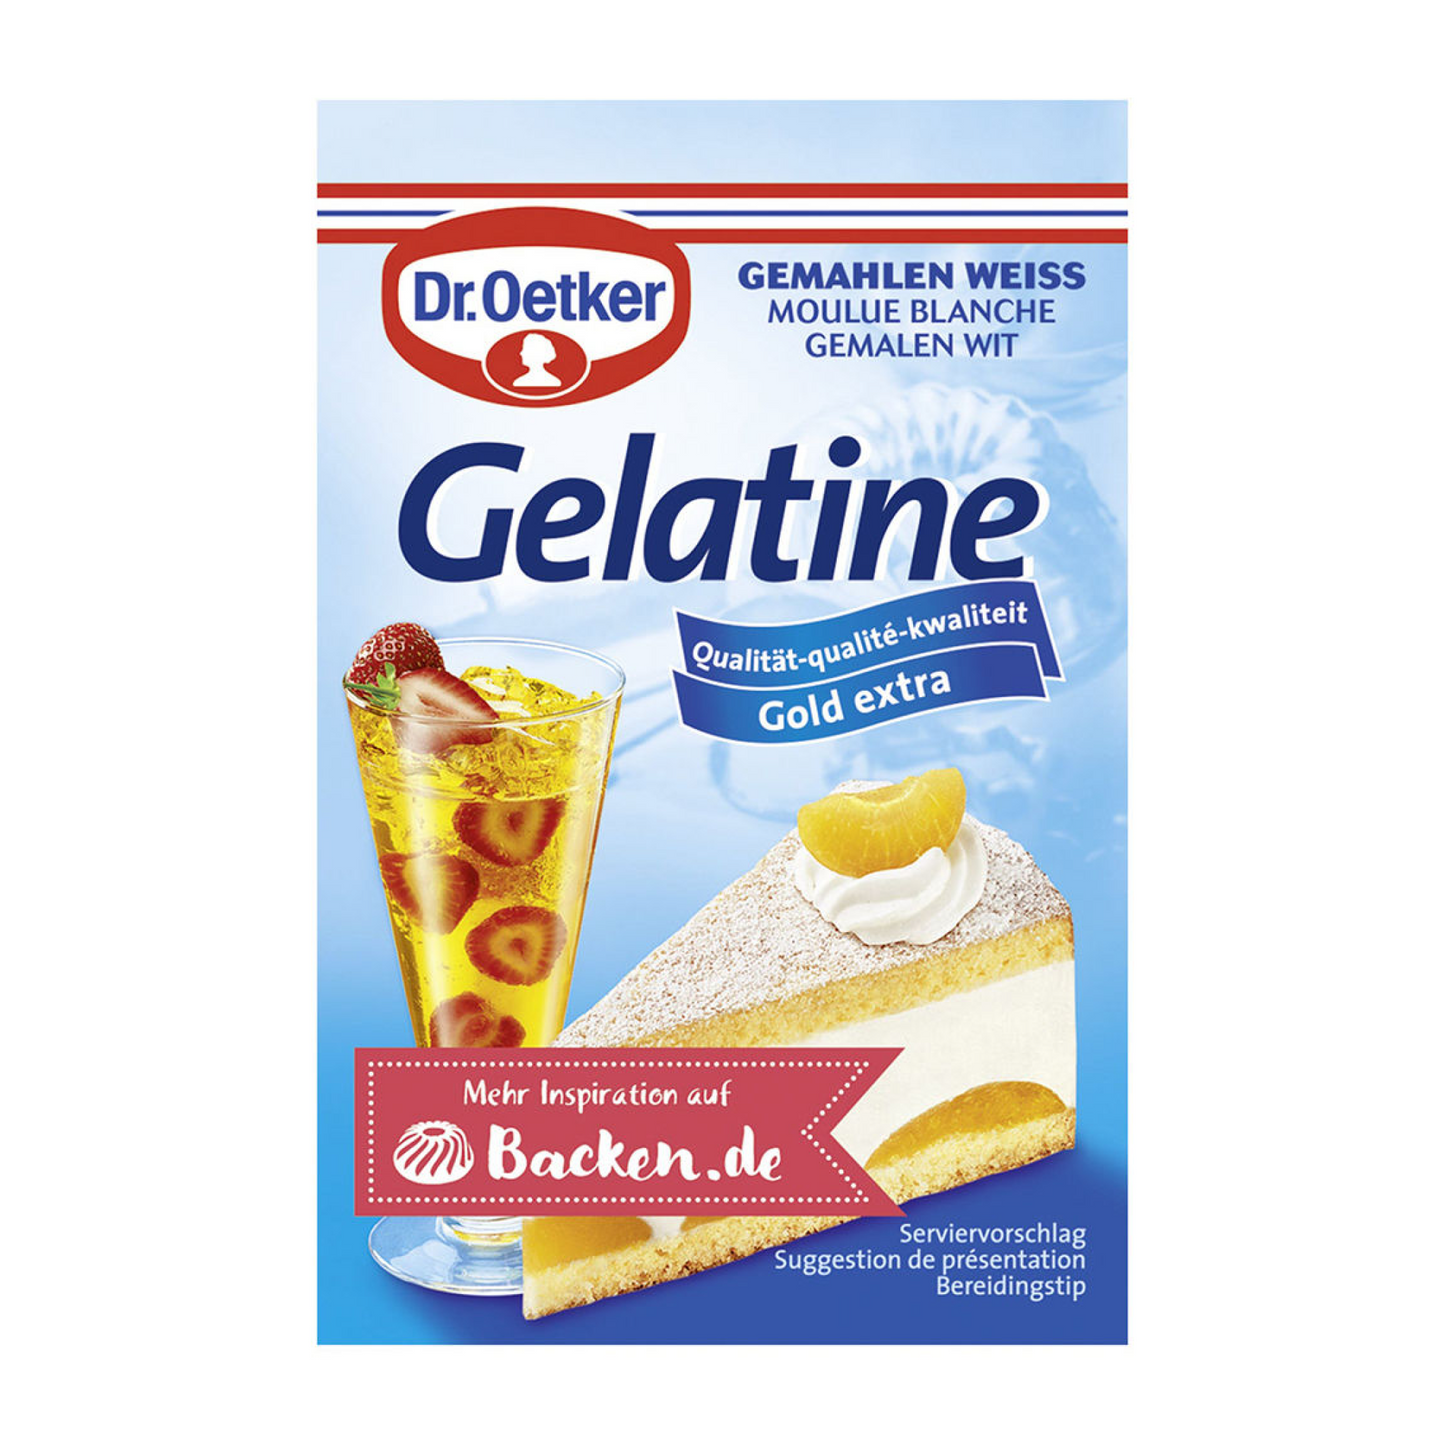 Dr. Oetker Gelatine 6 Pack 10g